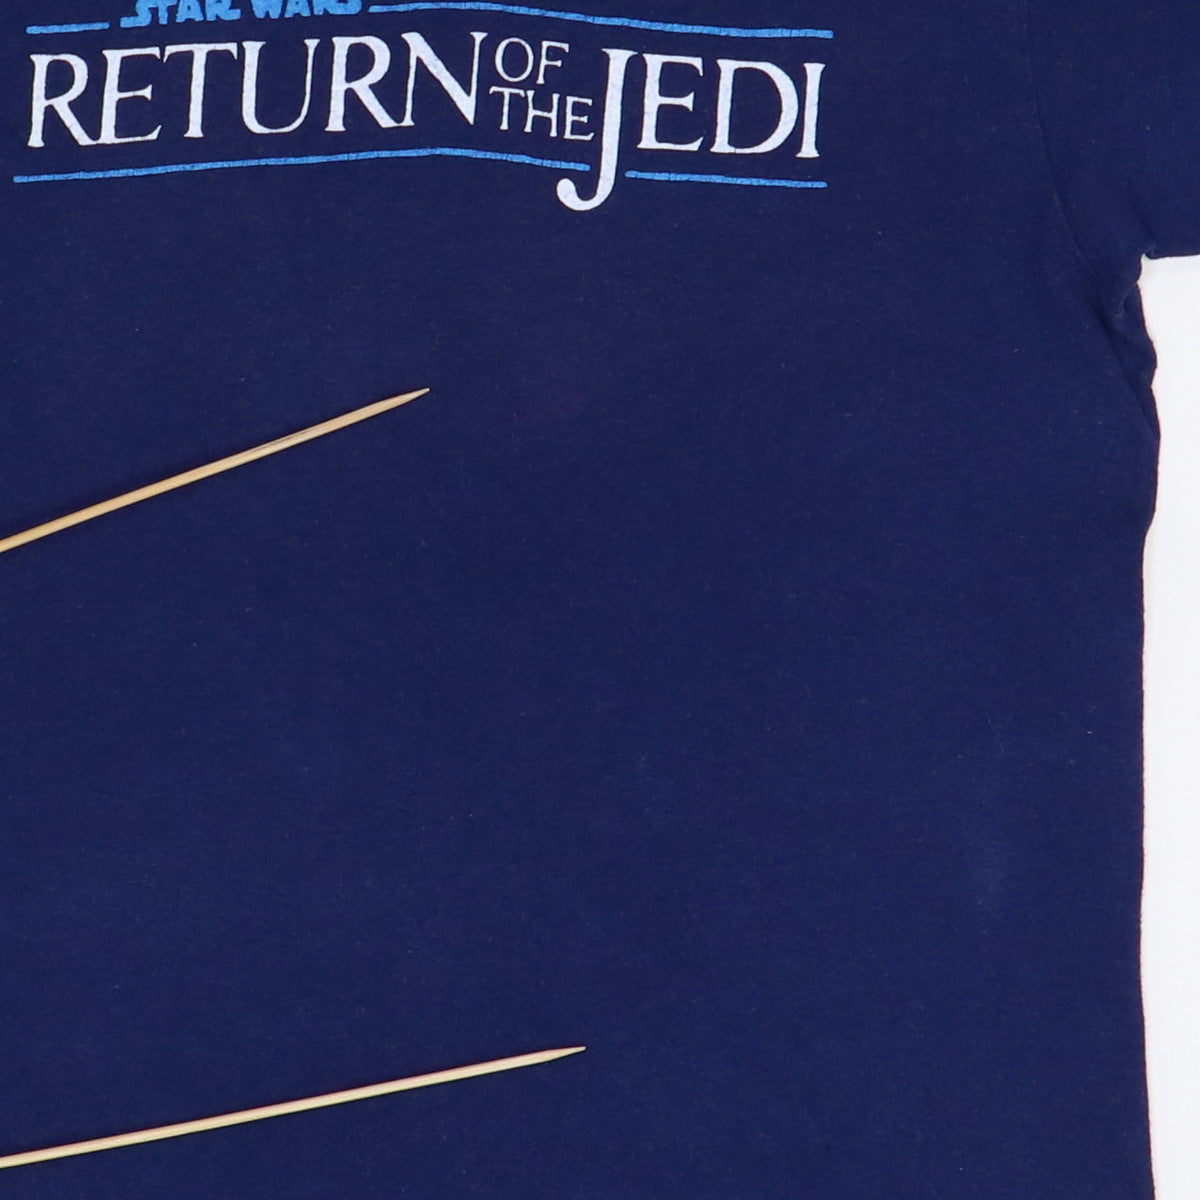 1983 Star Wars Return Of The Jedi Shirt